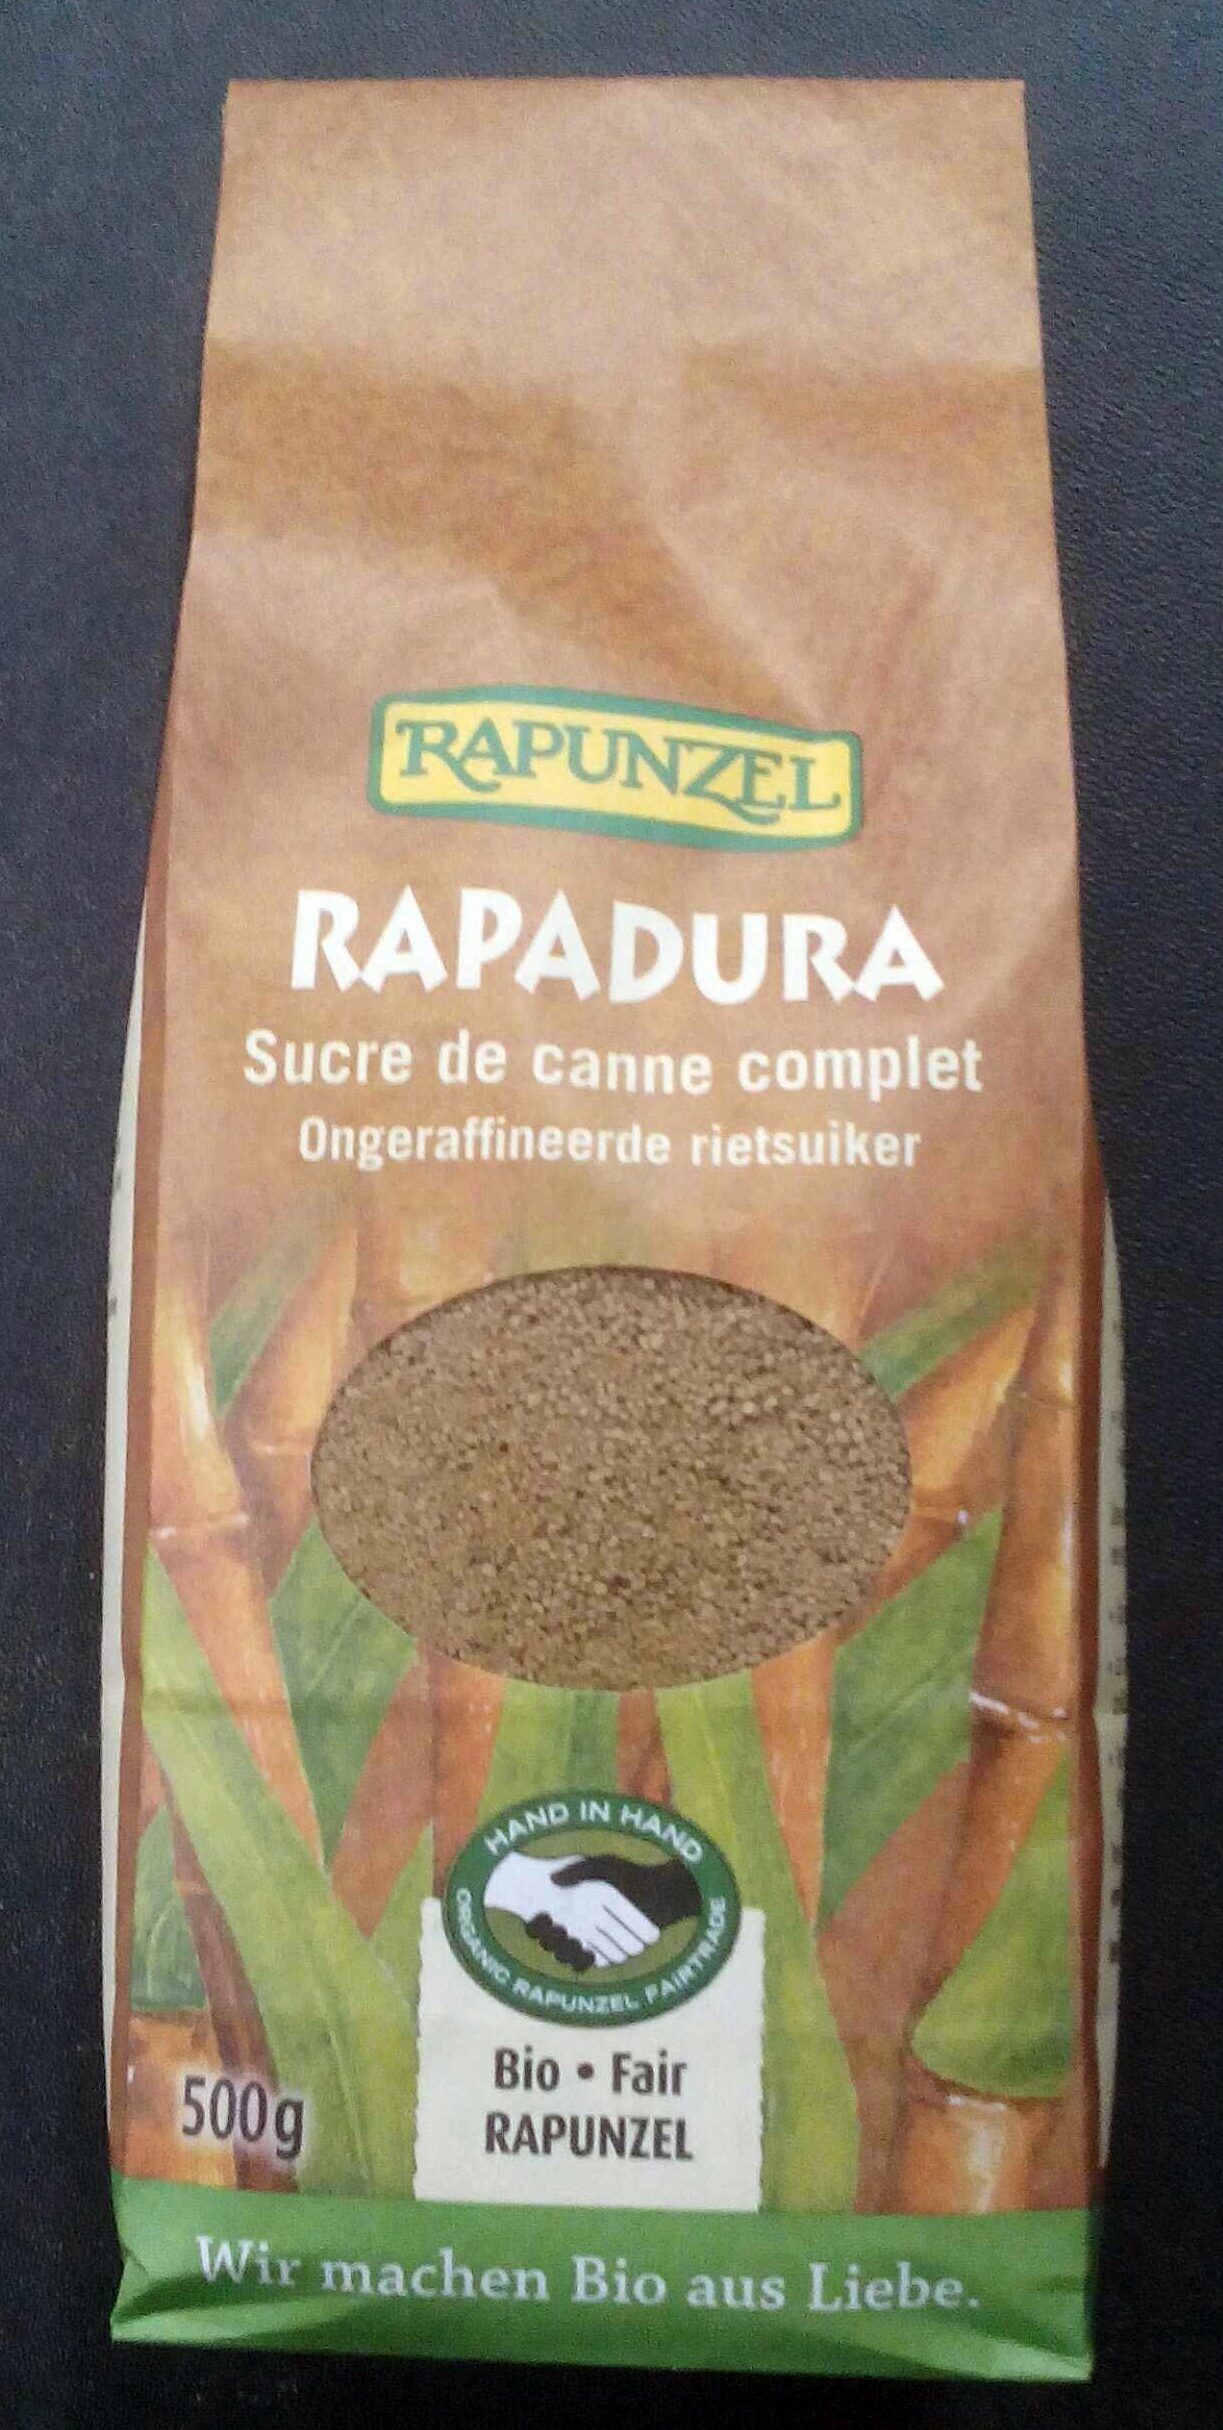 Rapadura - Sucre de canne complet - Product - fr